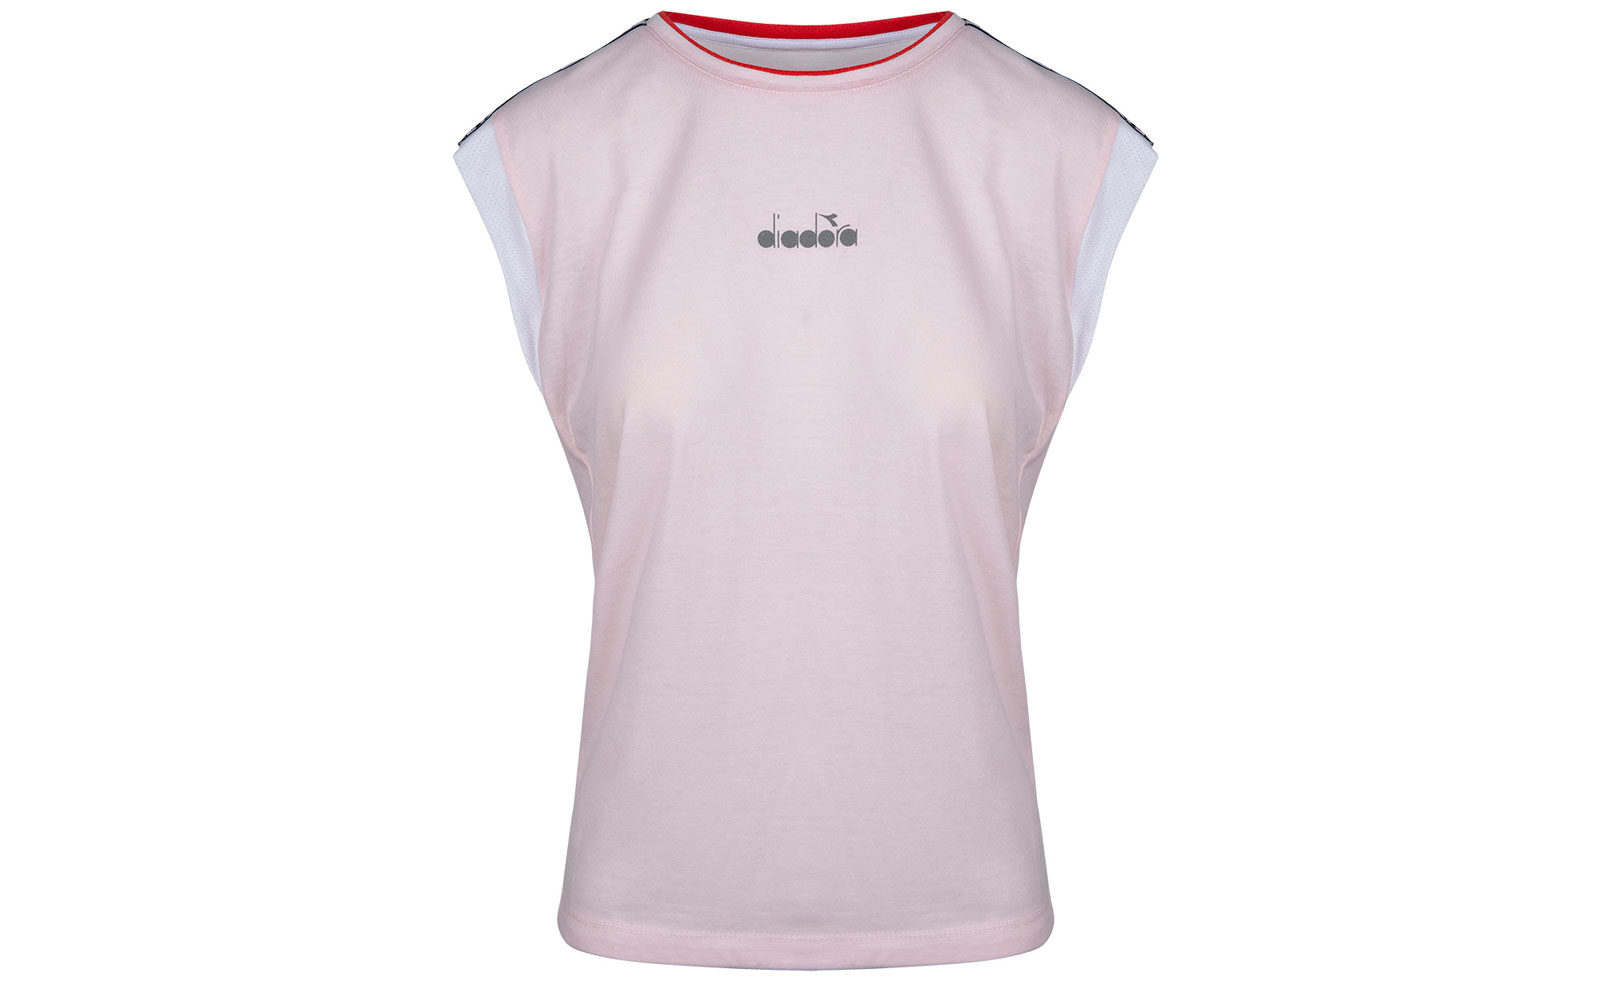 DIADORA  T- shirt rosa 33 euro www.diadora.com